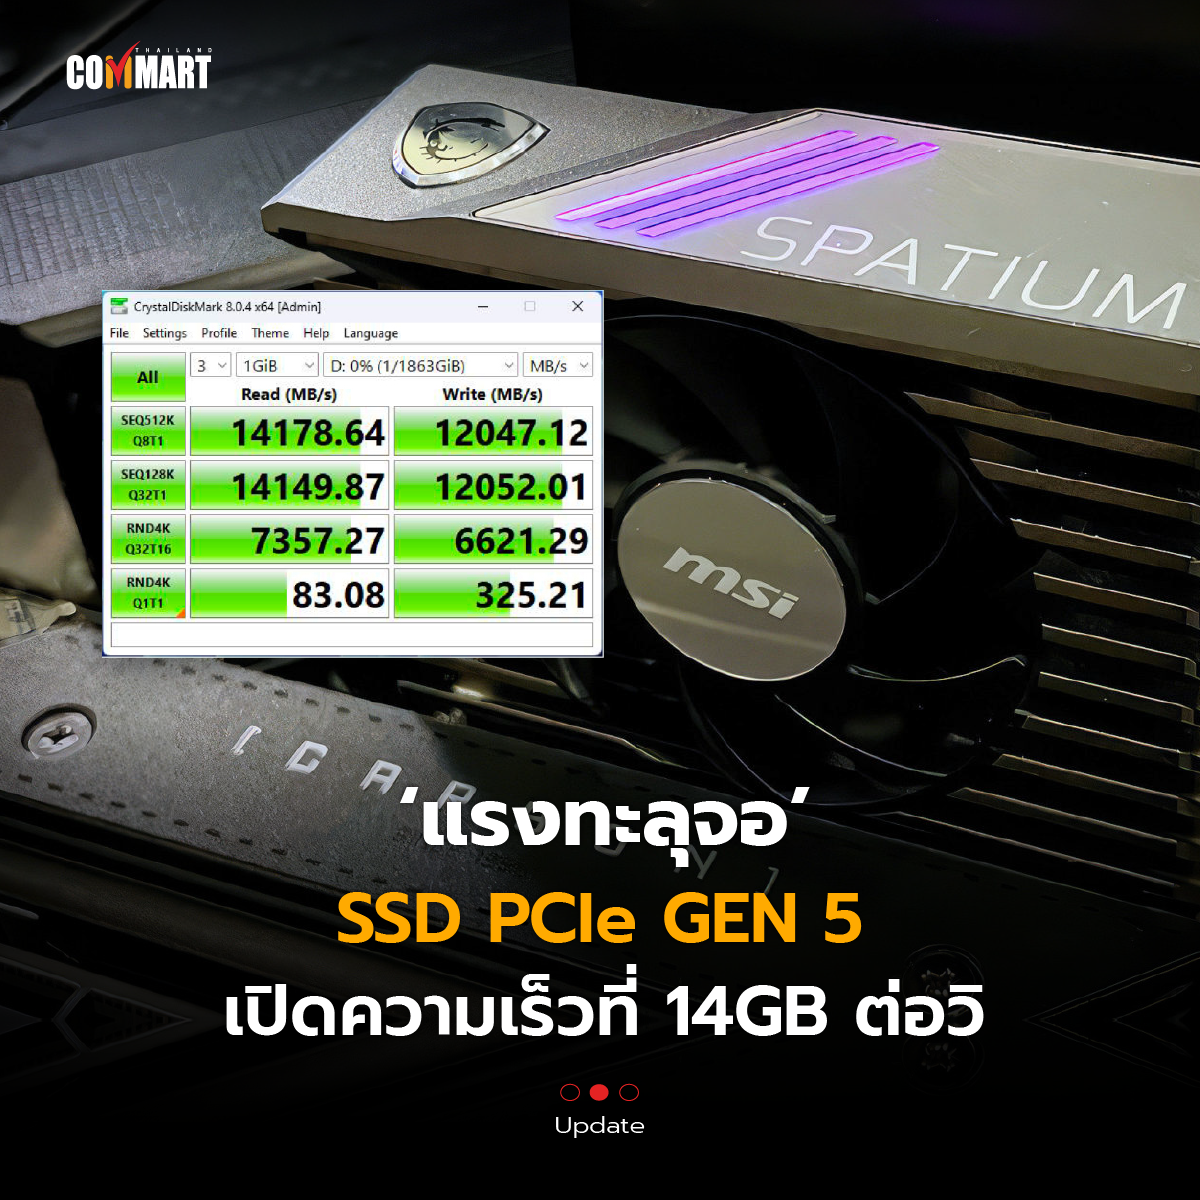 แรงทะลุจอ SSD PCIe GEN 5 เปิดความเร็วที่ 14GB ต่อวิ